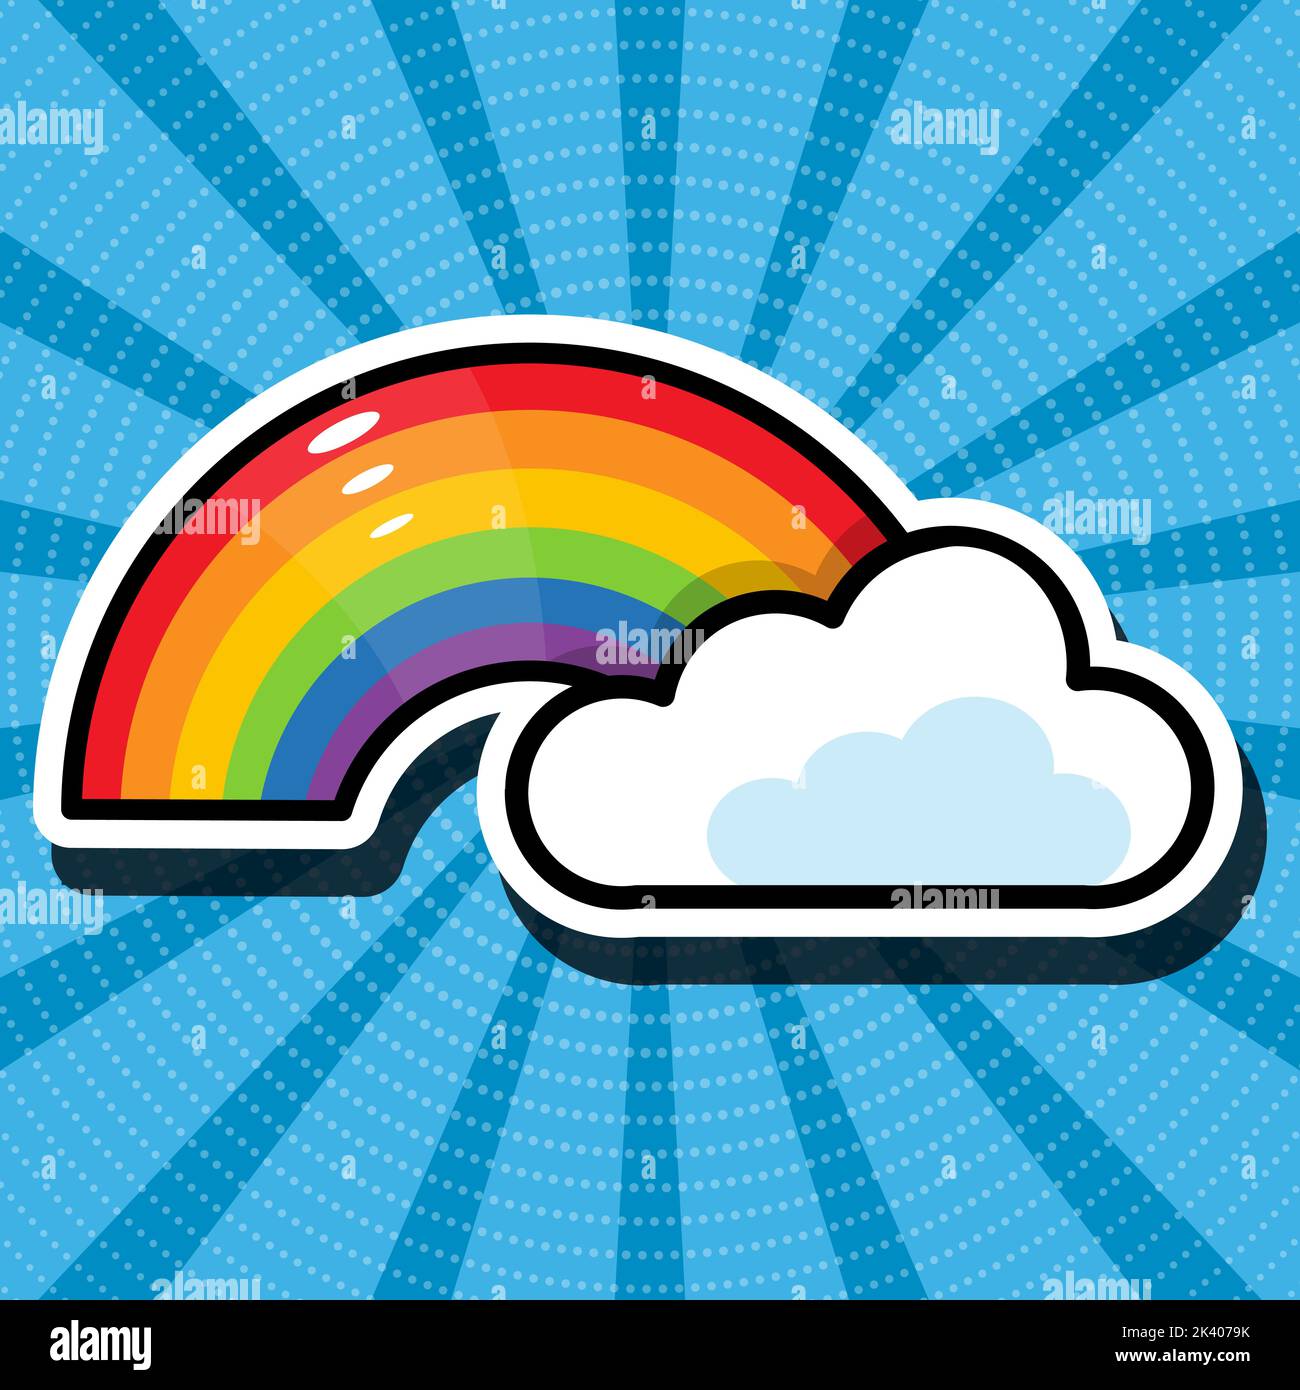 Ilustración de dibujos animados de arco iris y nube. Fondo azul retro. Estilo cómic, arte pop. Pegatinas, parches, pins. Ilustración del Vector